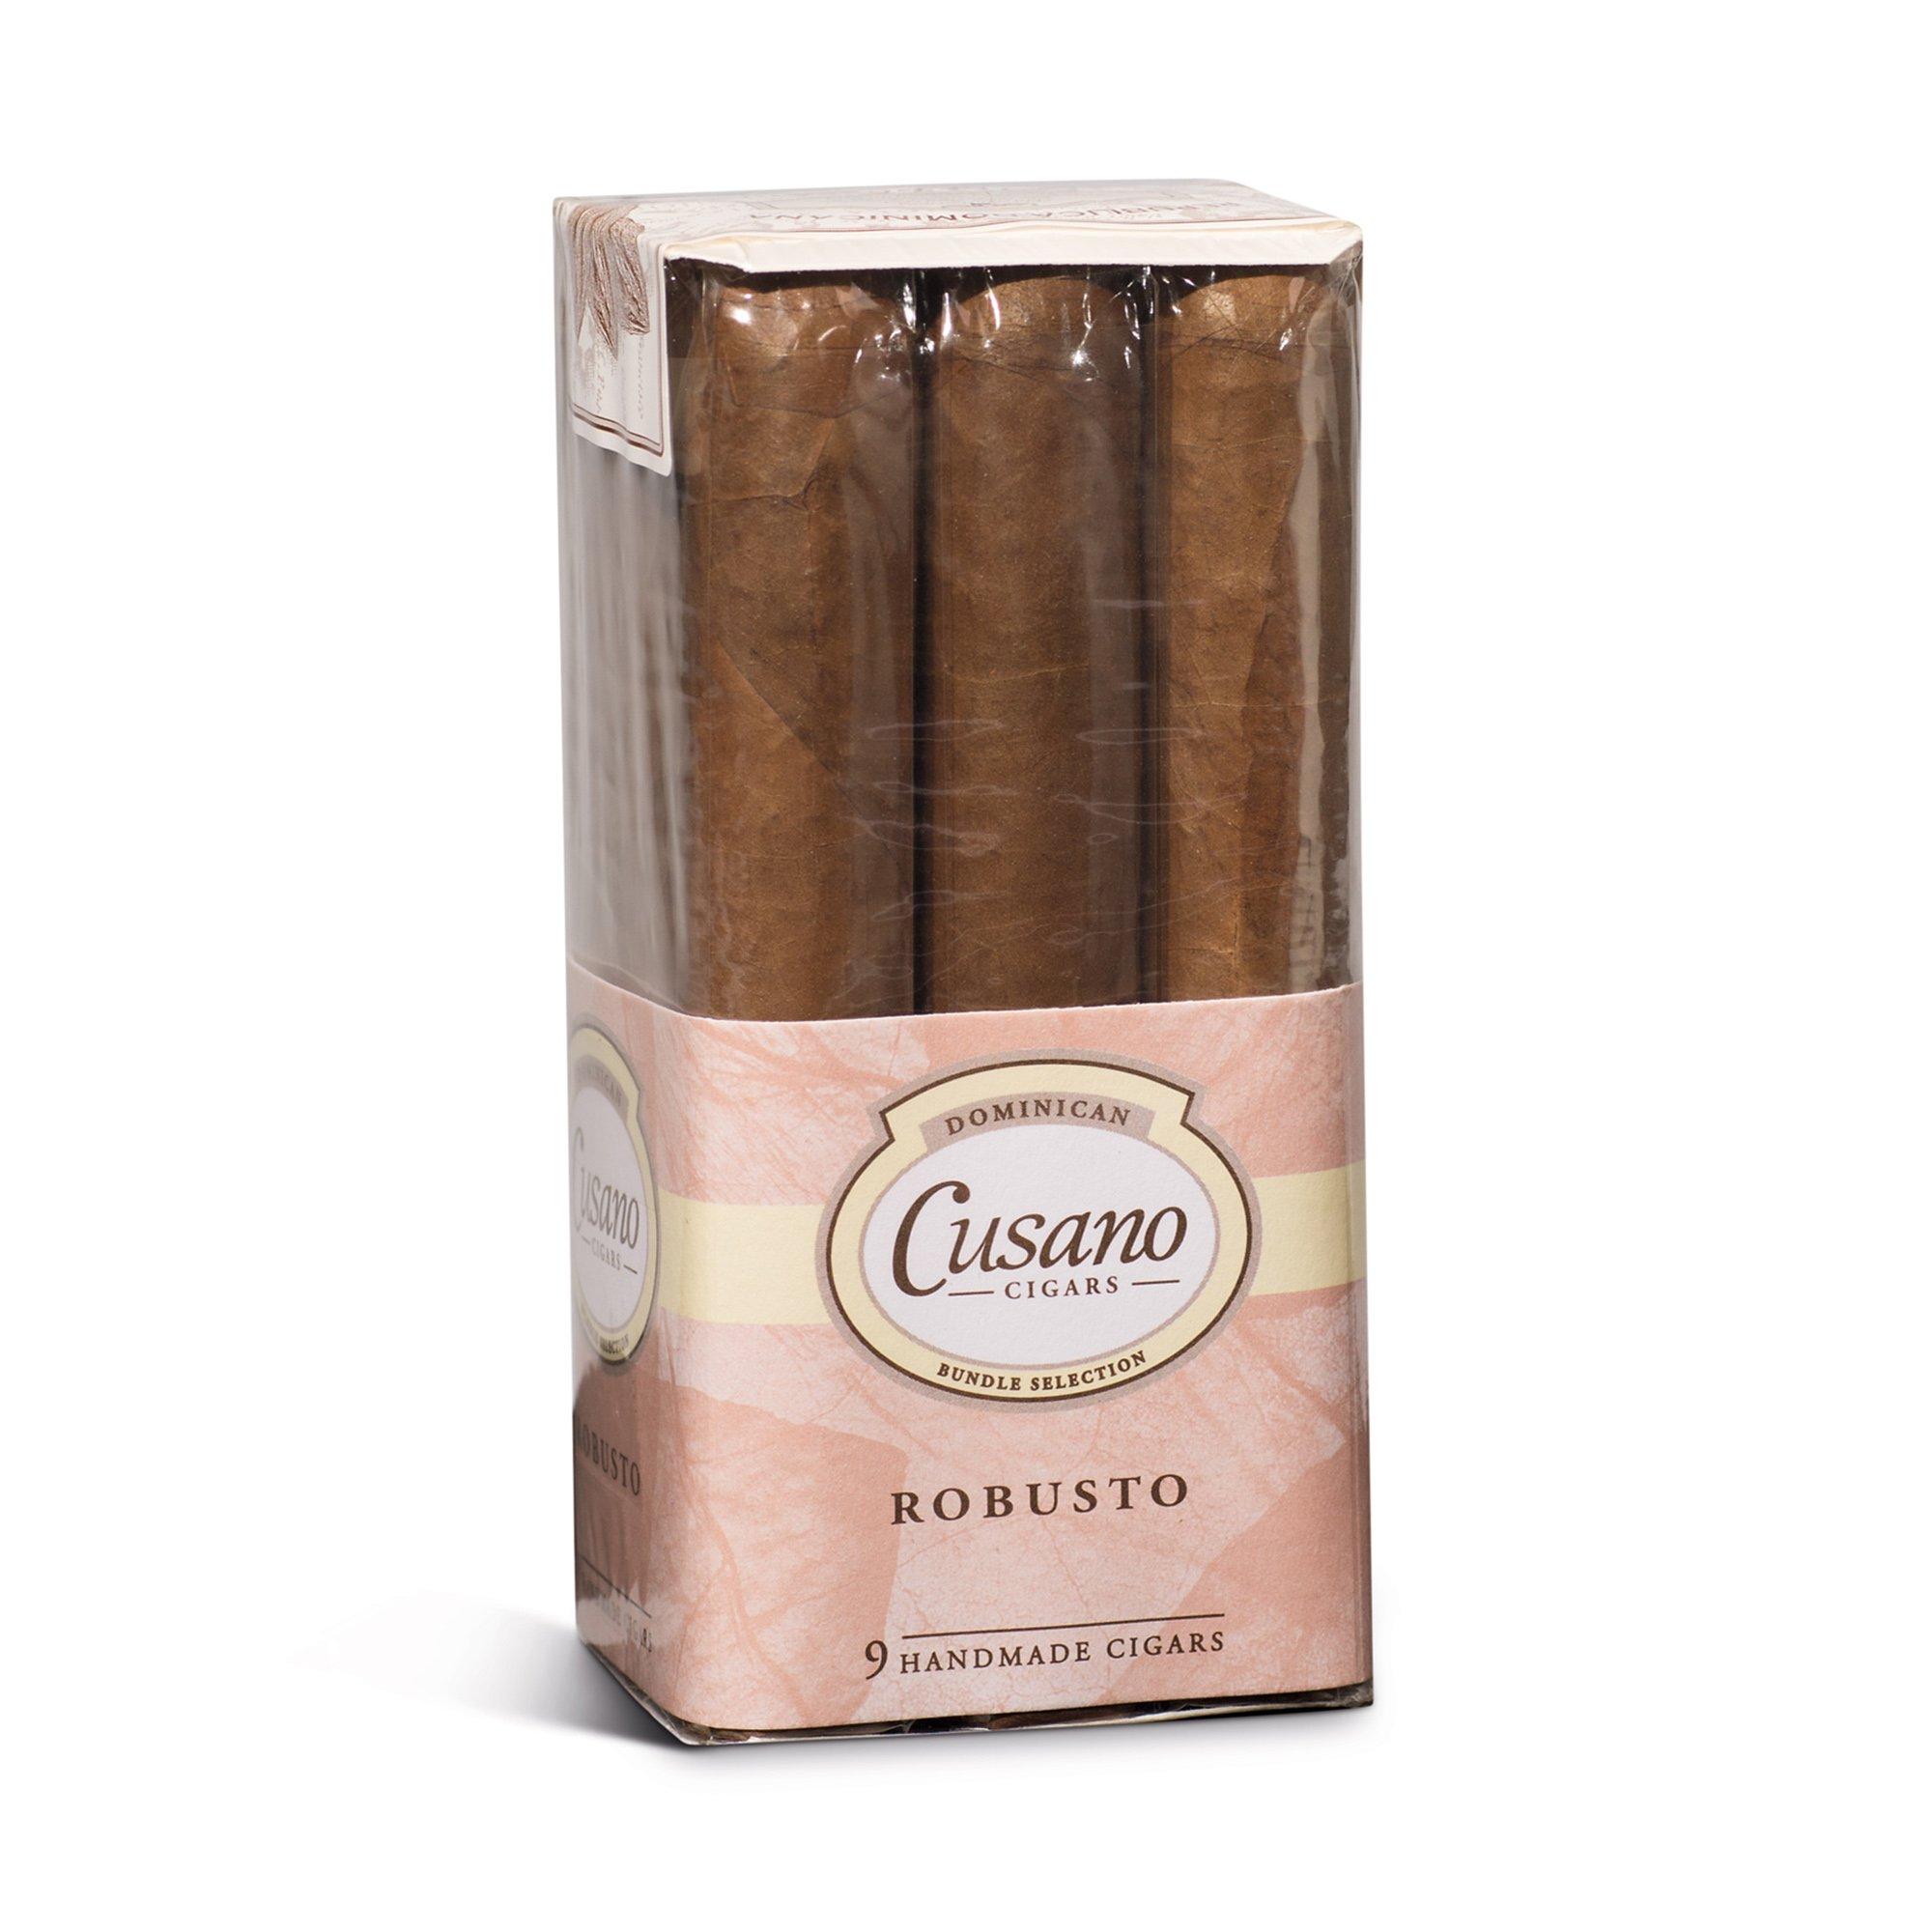 Image of Bundle Sel Cusano Cigars, Robusto, Dominikanische Republik